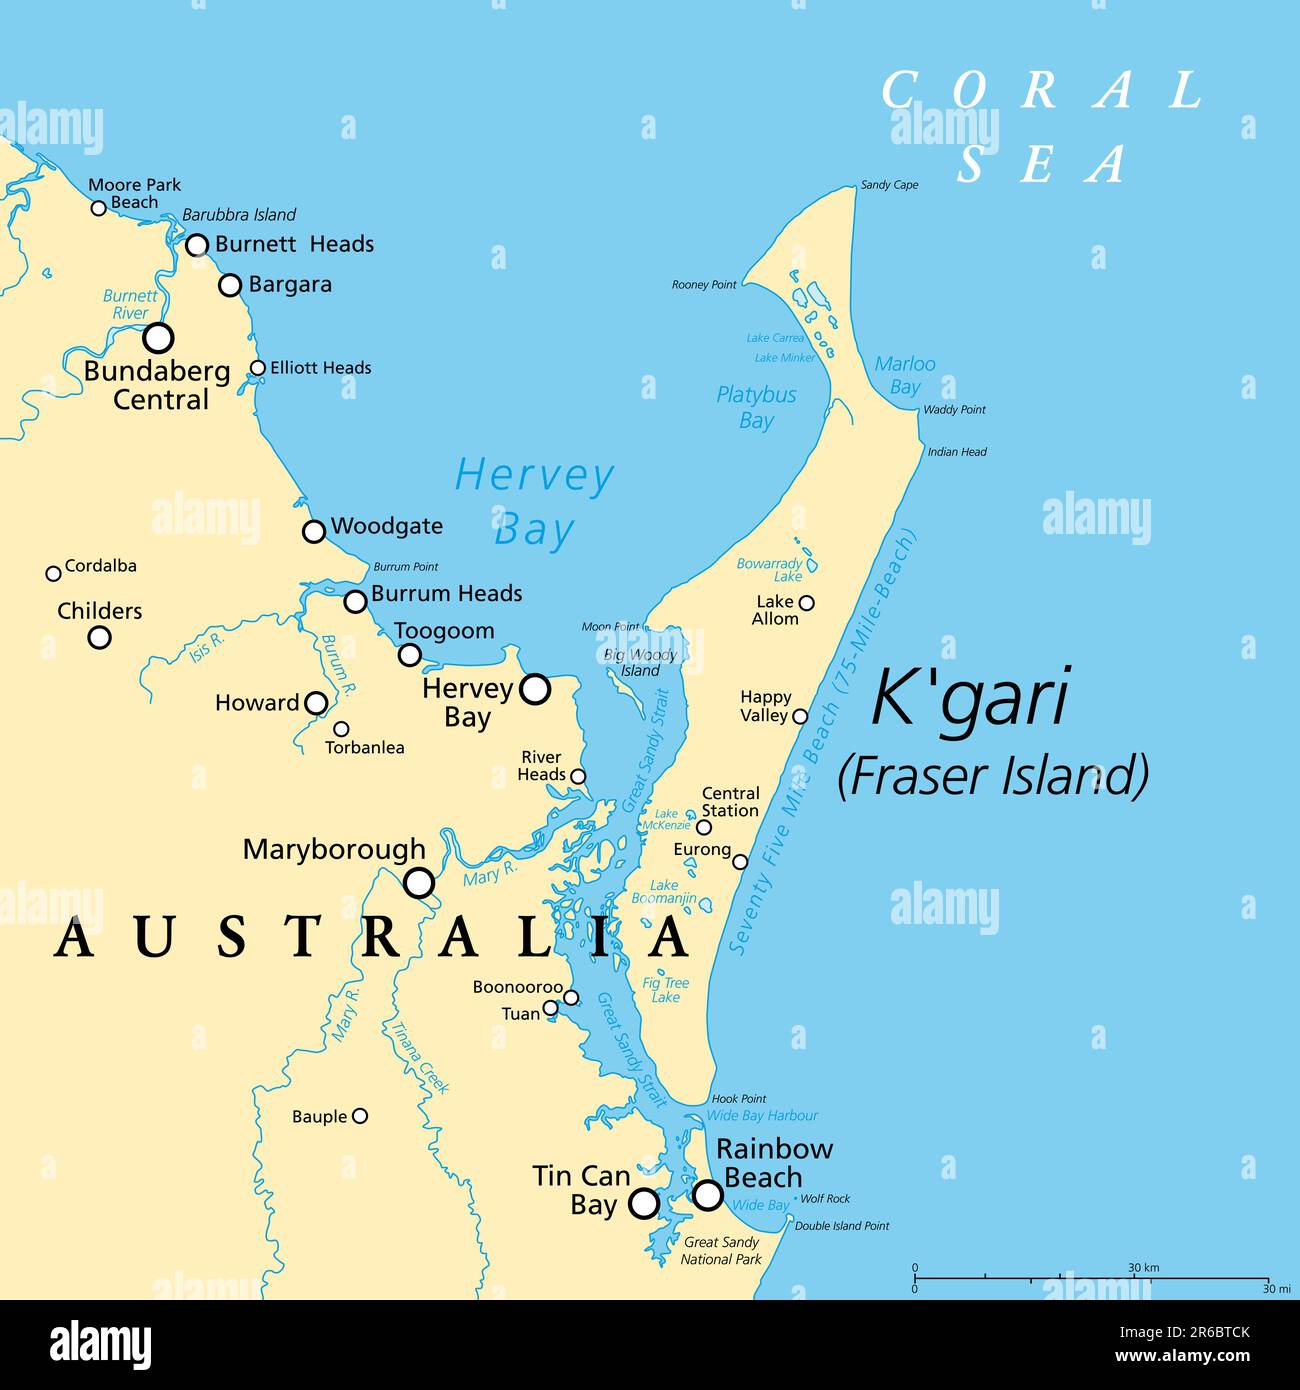 Kgari, ex isola di Fraser, mappa politica. L'isola di sabbia più grande del mondo, lungo la costa del Queensland, Australia, con una spiaggia di 75 miglia. Foto Stock